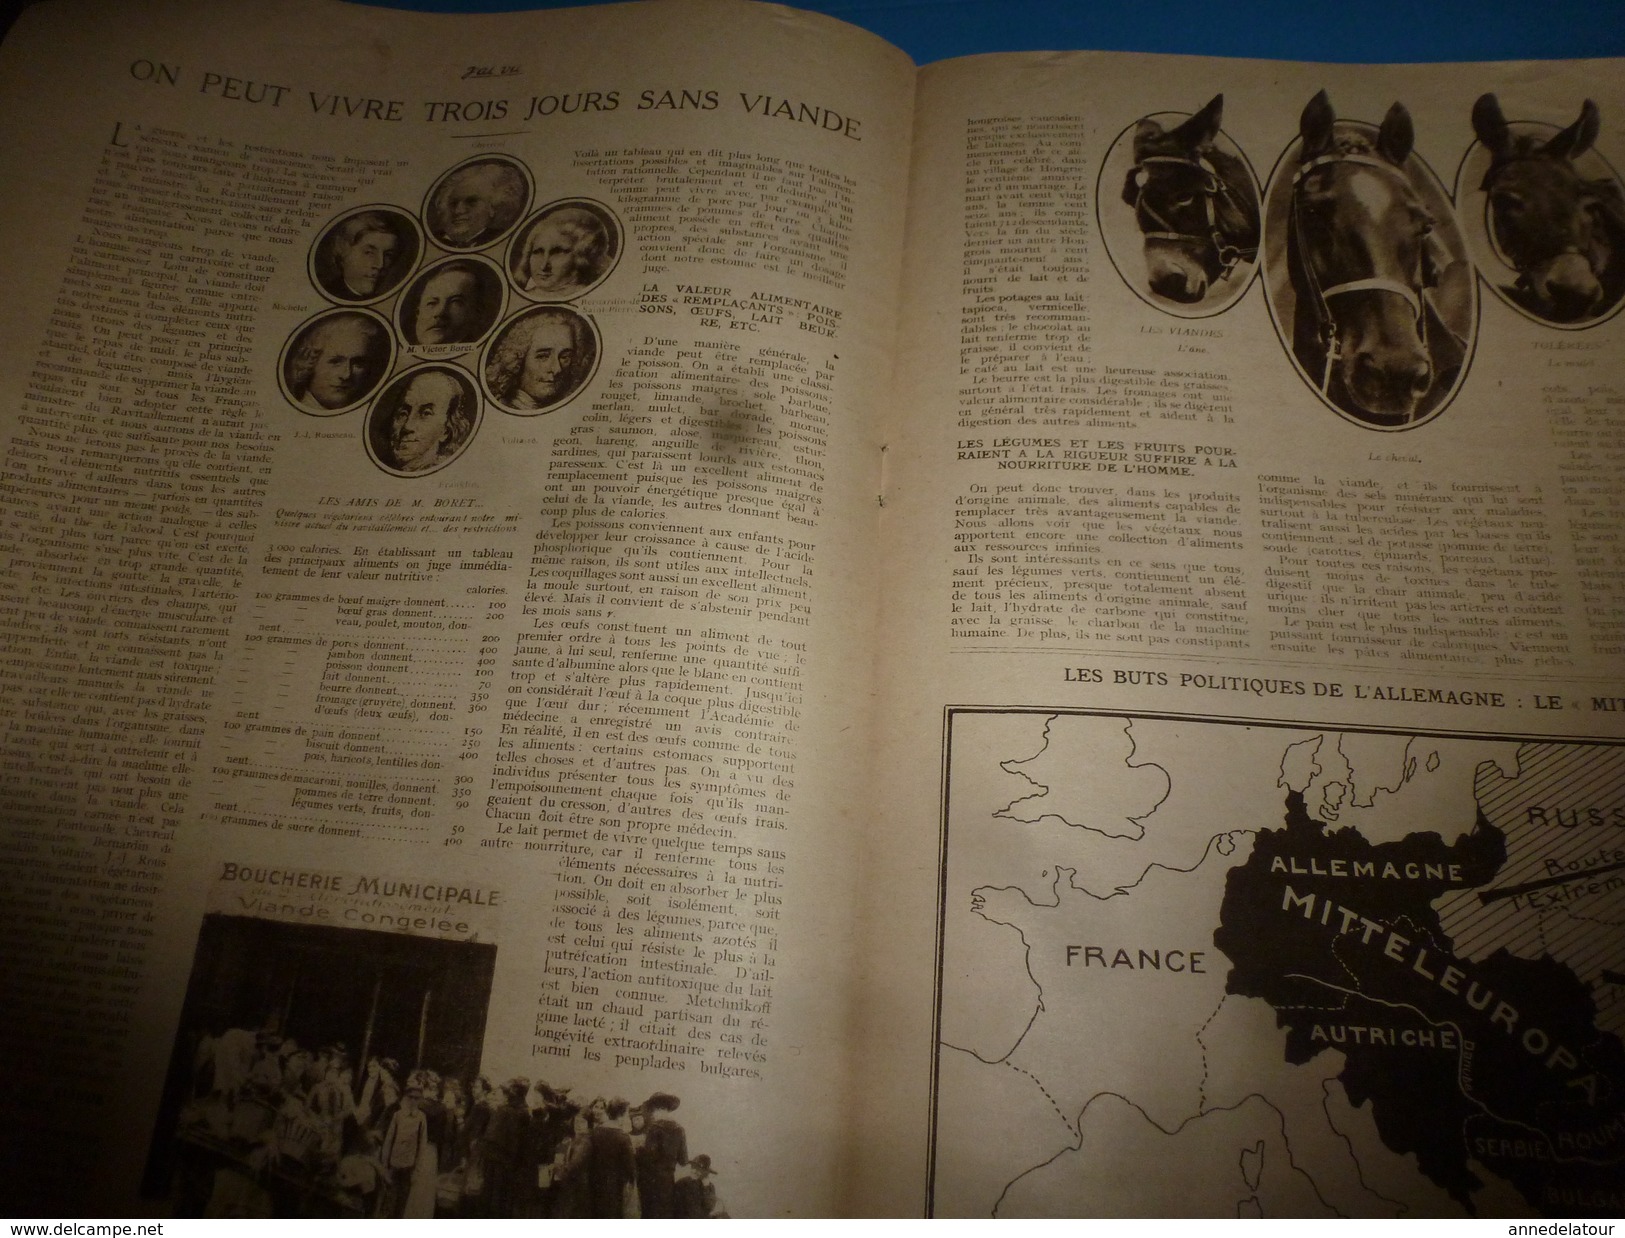 1918 J'AI VU: Voyance,la sorcière des Batignoles;Diables Bleus; Héros de l'Ailly;Aviation;British soldiers; Les CHIENS